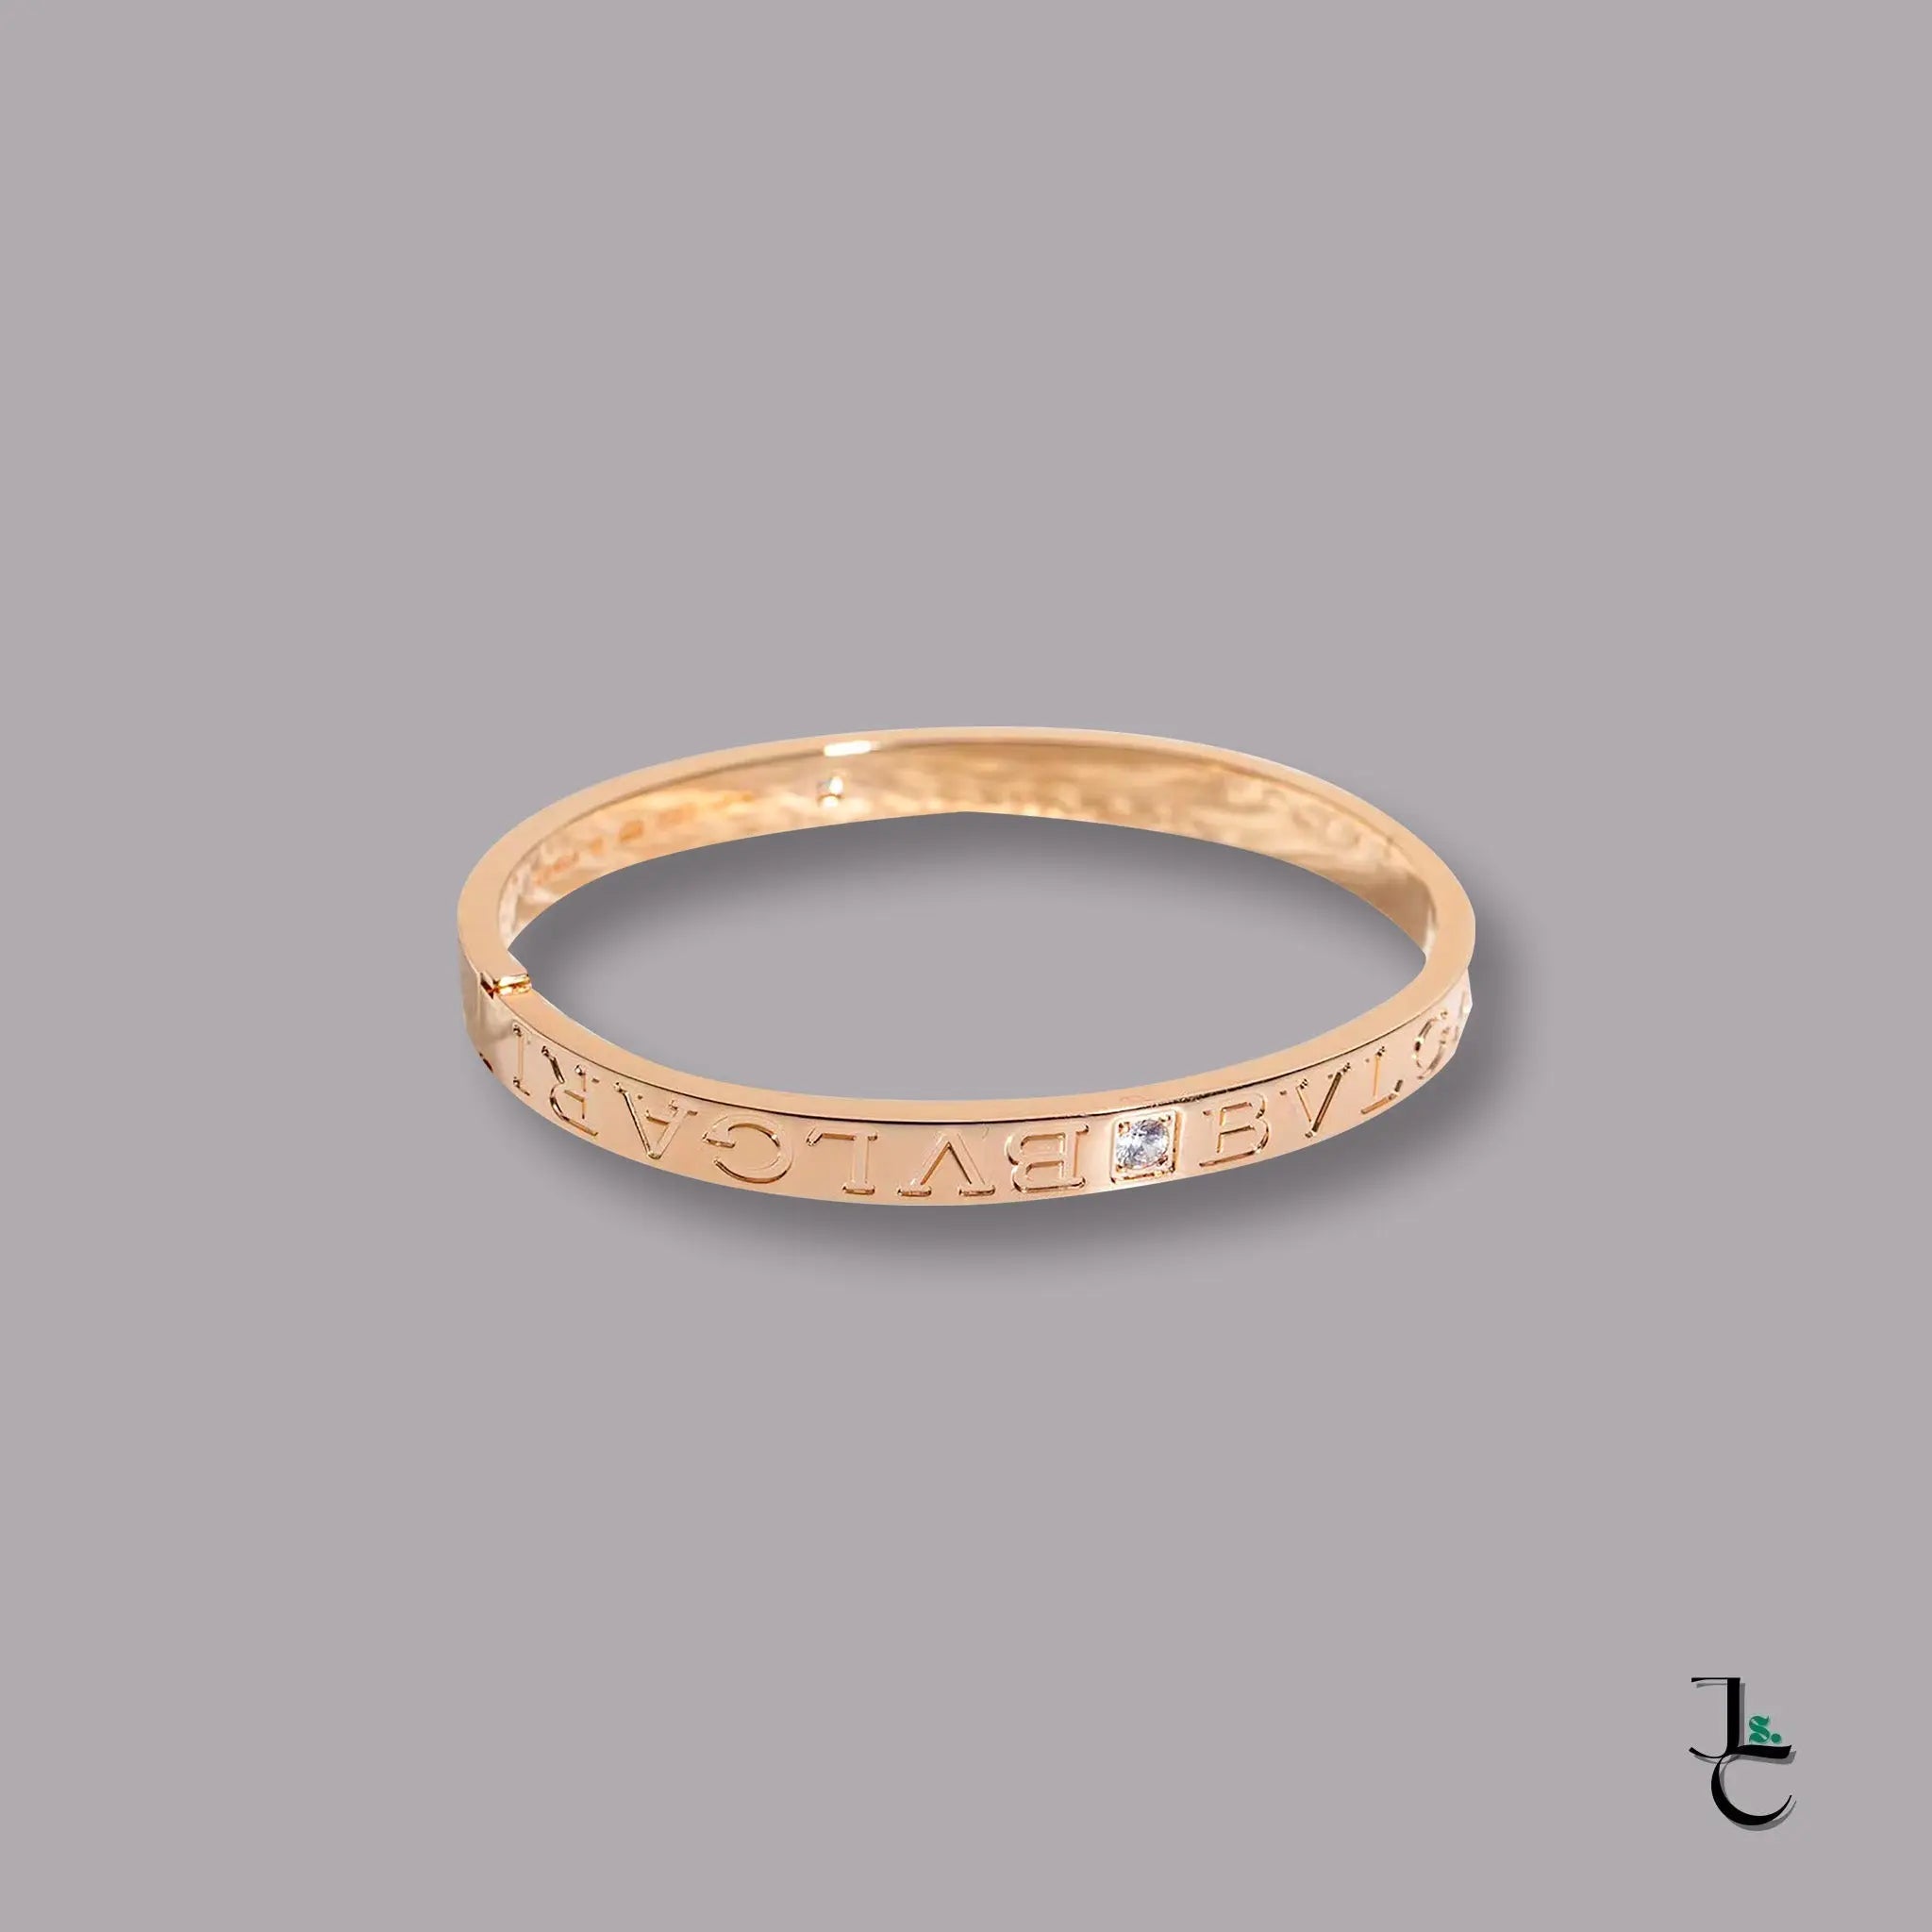 BVLGARI SERPENTI RINGS | Bvlgari serpenti ring, Jewelry, Gold rings jewelry